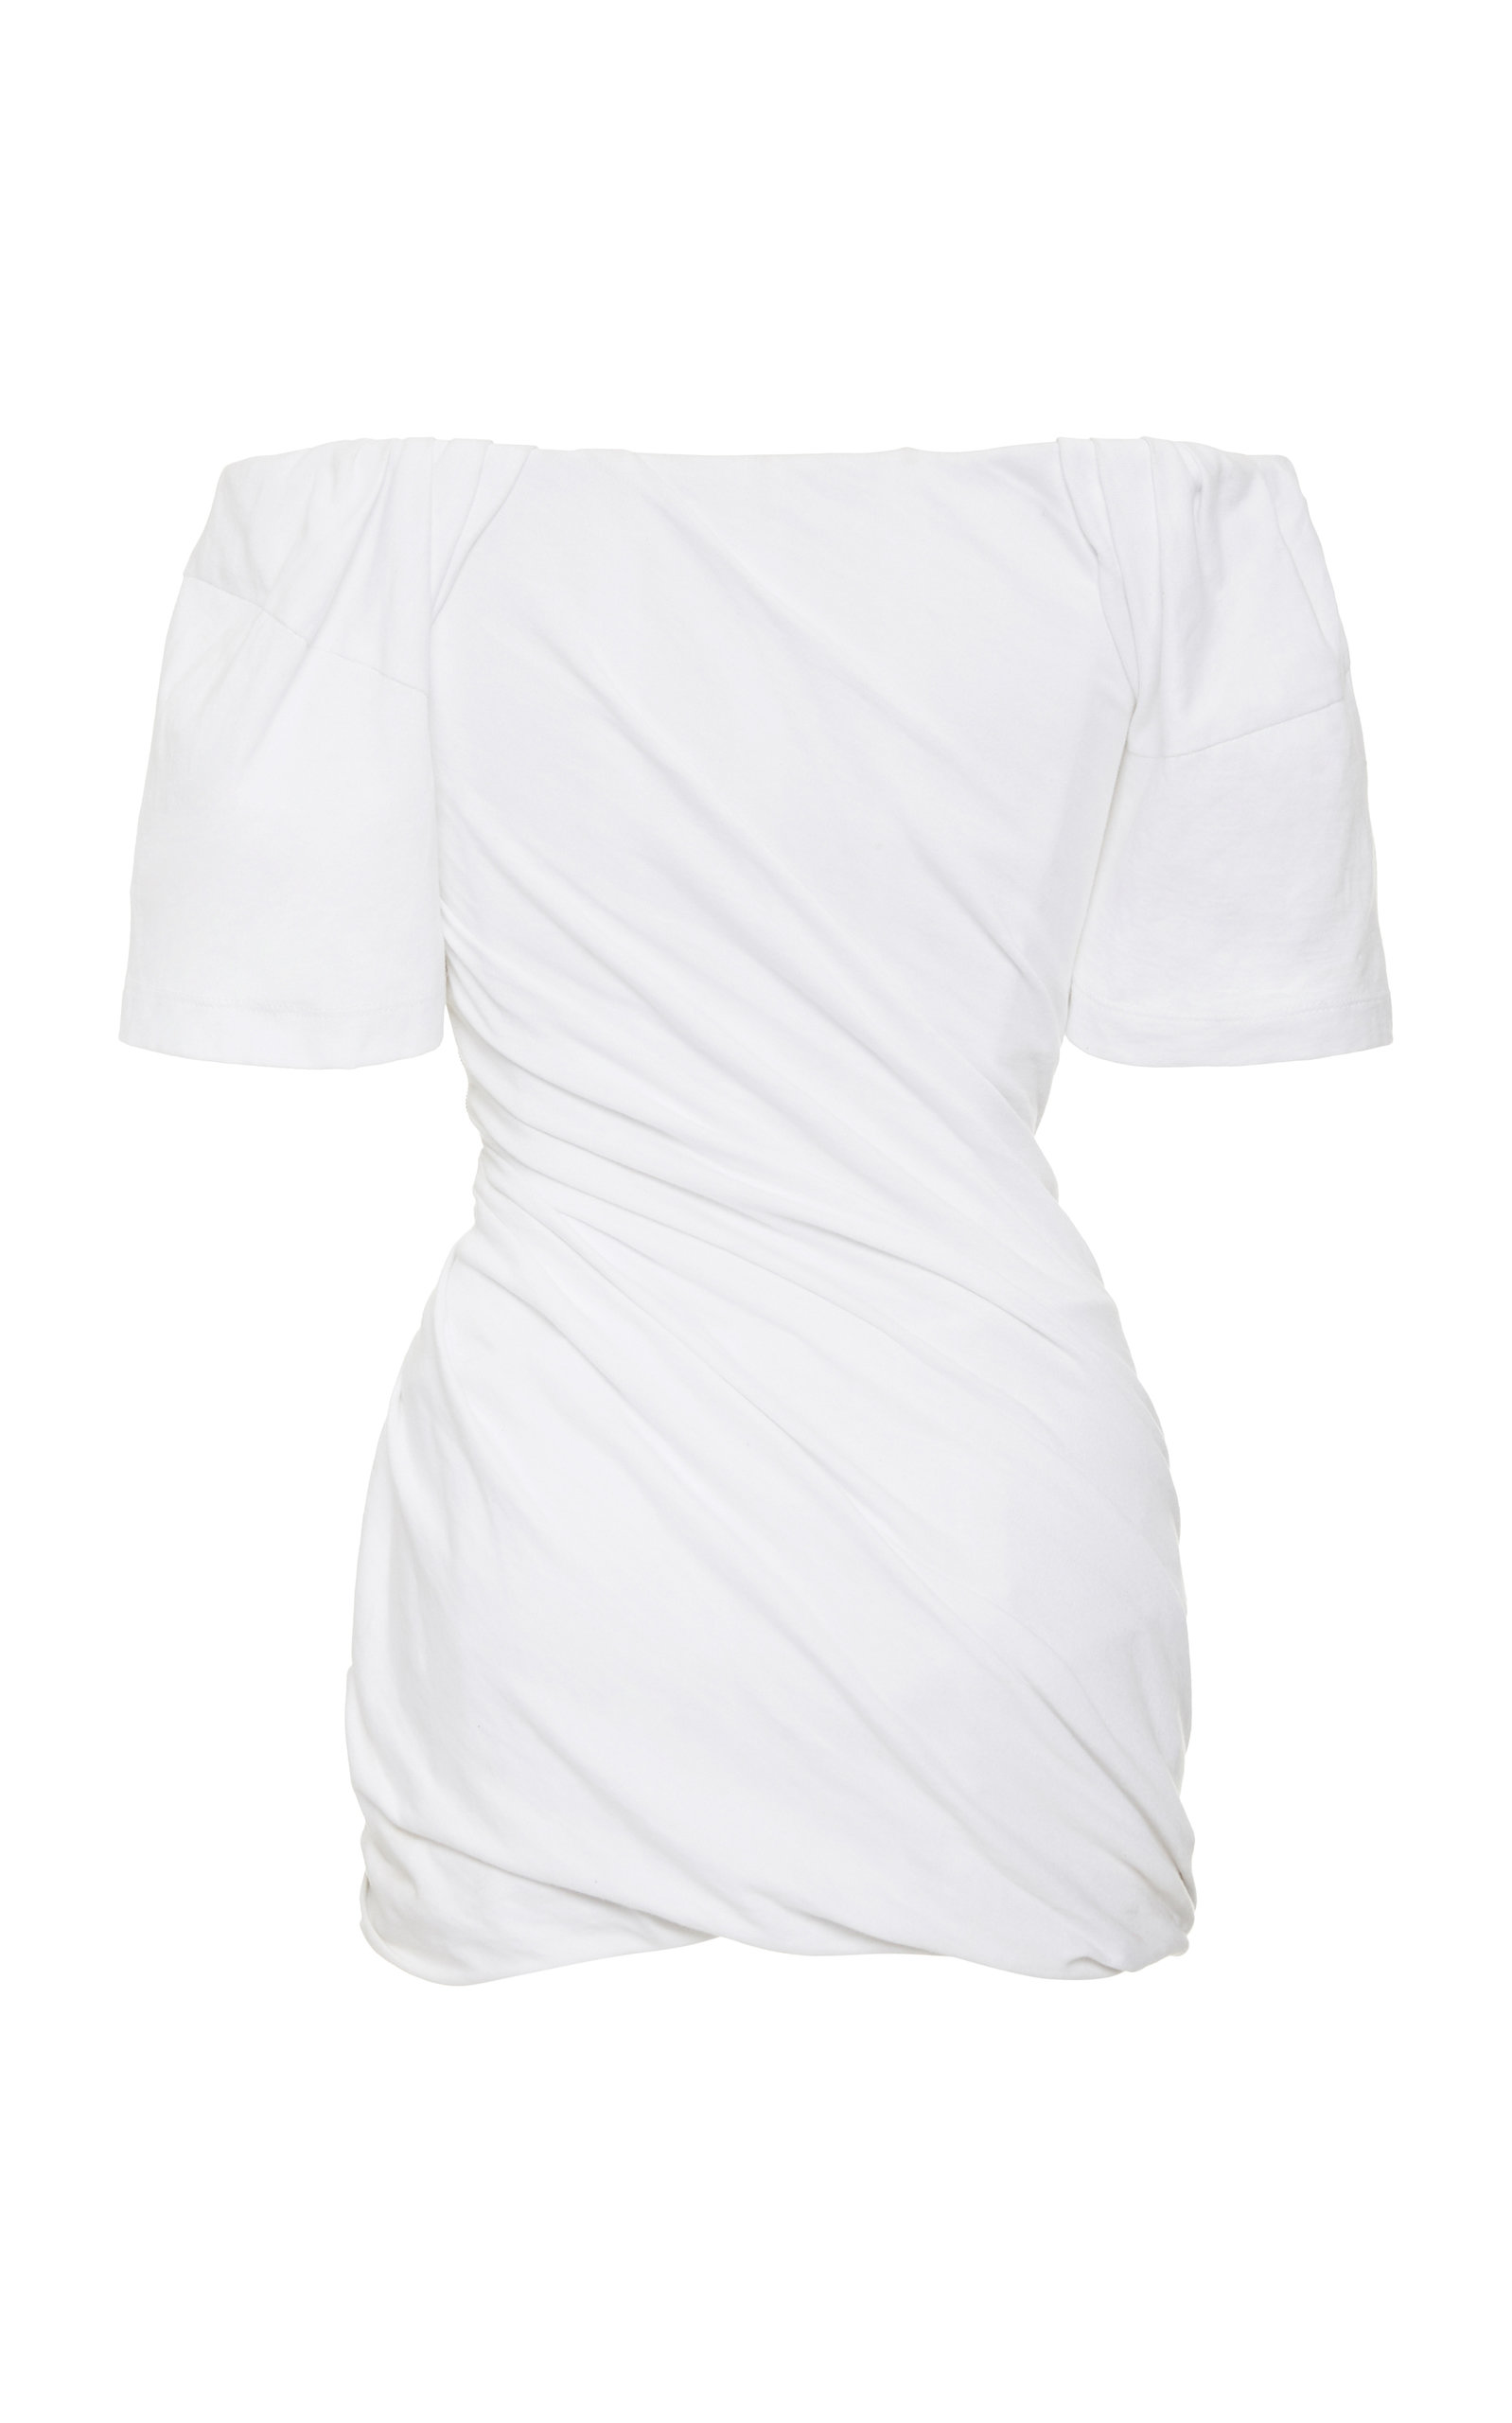 alexander wang white shirt dress